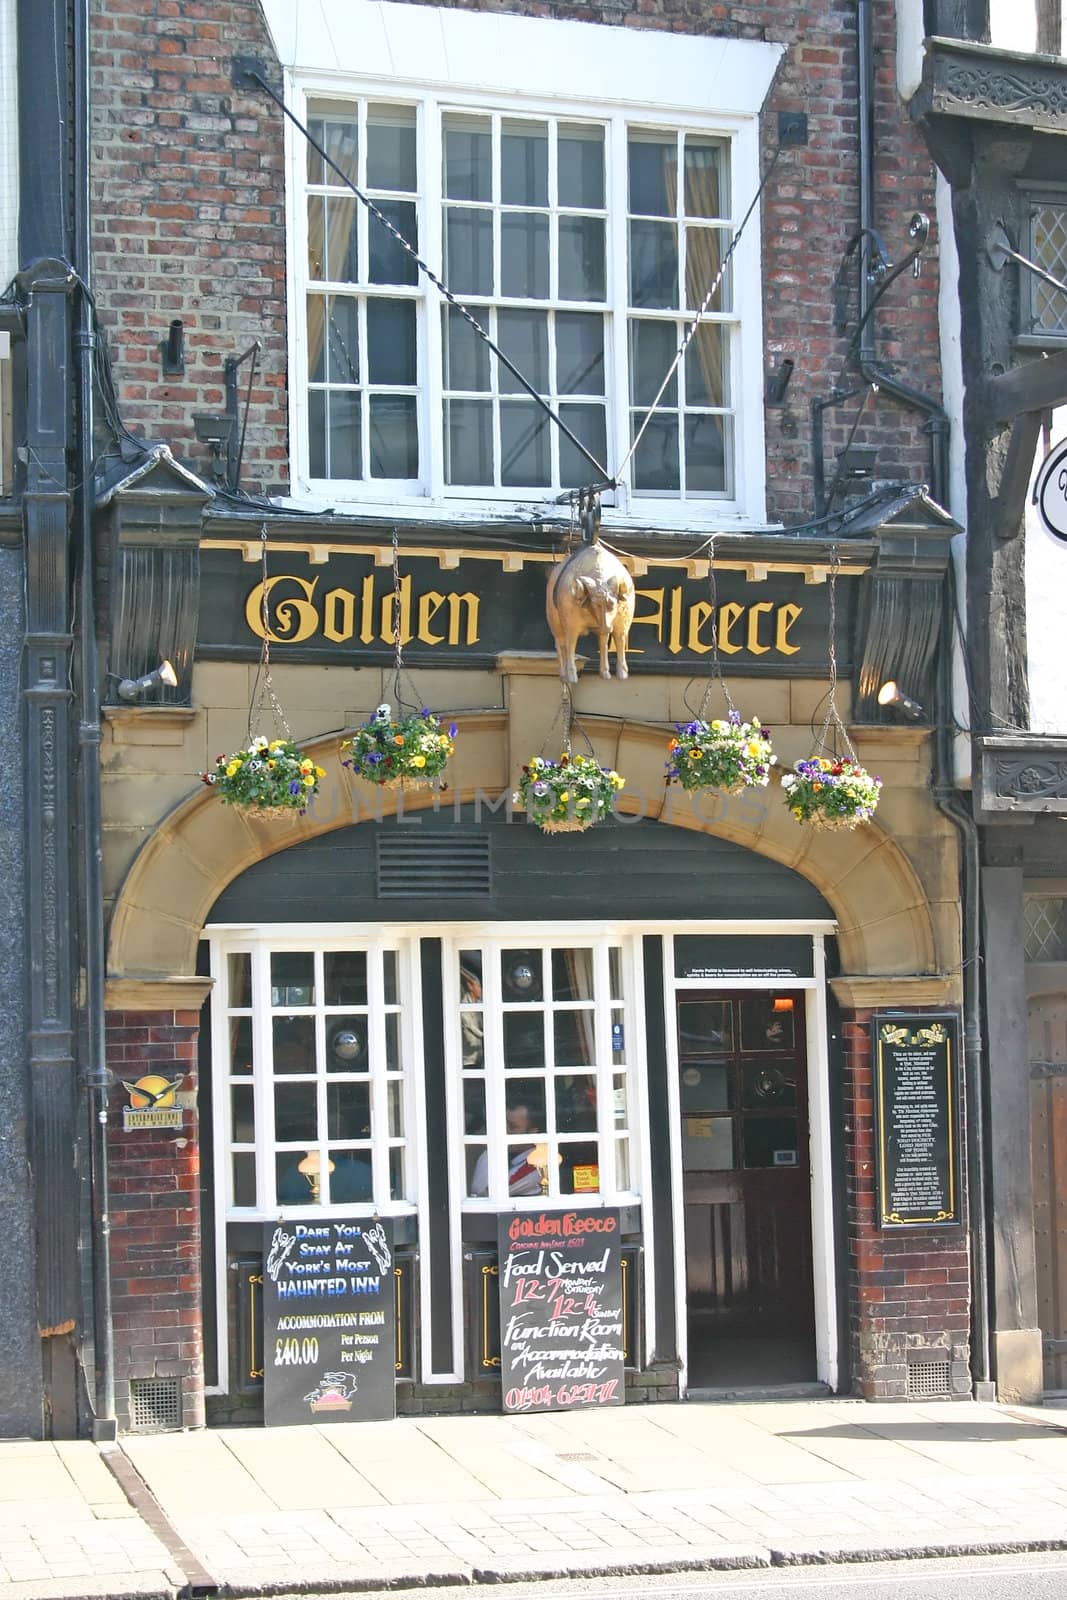 Golden Fleece Pub in York